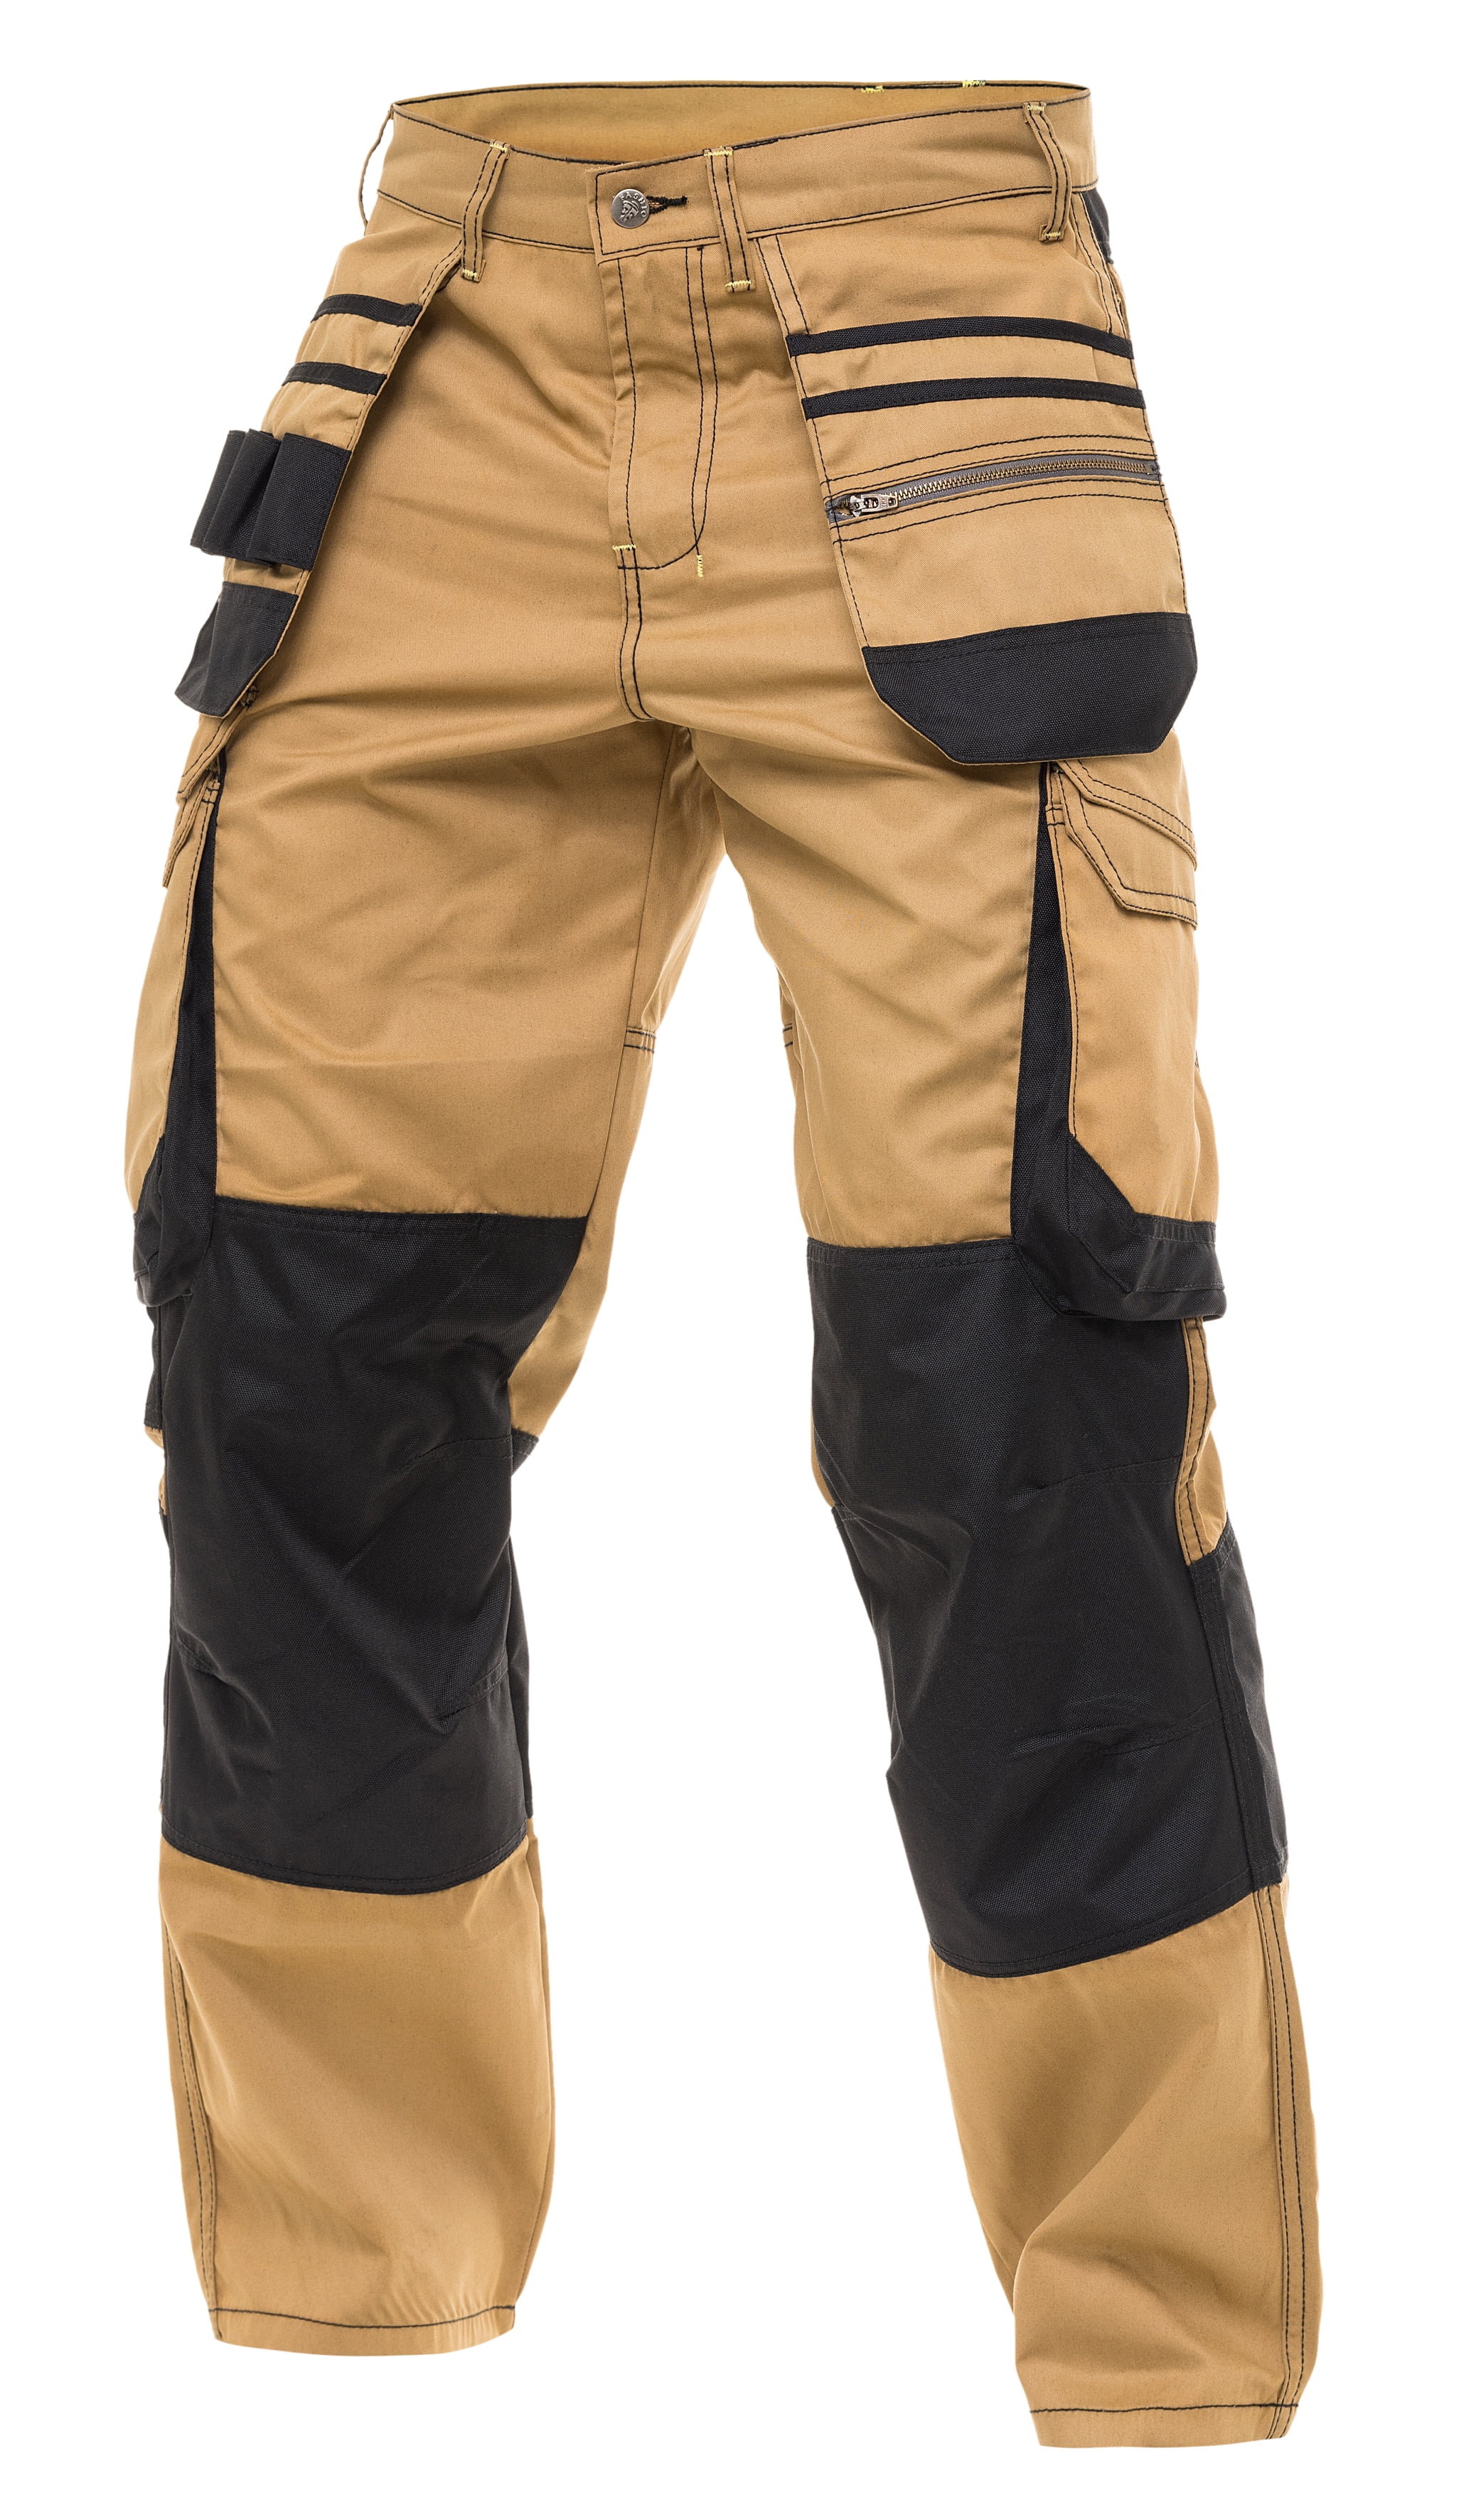 Mens Work Trousers Cargo Combat Size 3042 Black Navy Heavy Duty Workwear  Pants  eBay